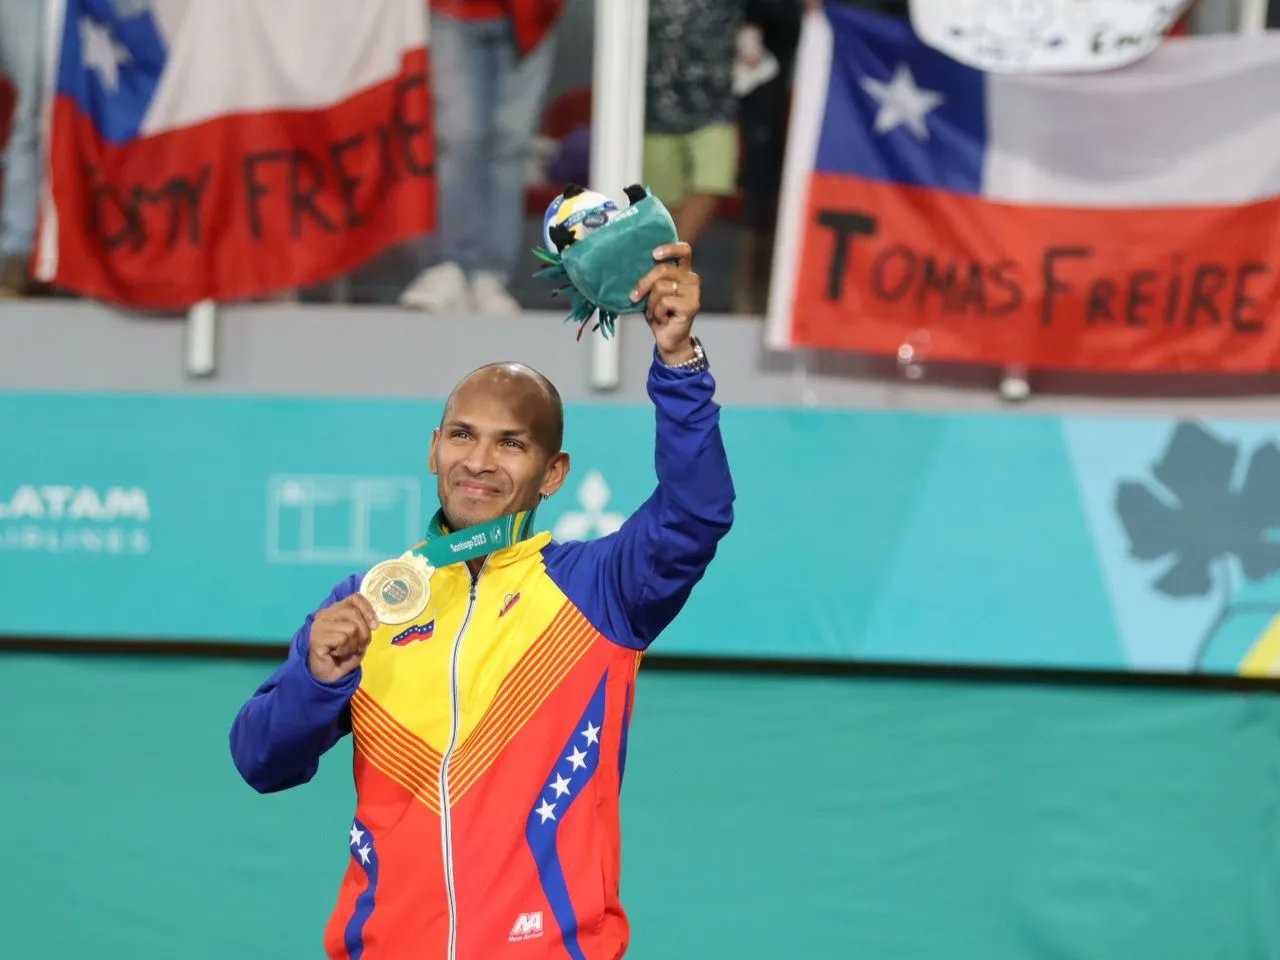 ¡Bicampeón panamericano! Andrés Madera se cuelga el último ORO para Venezuela